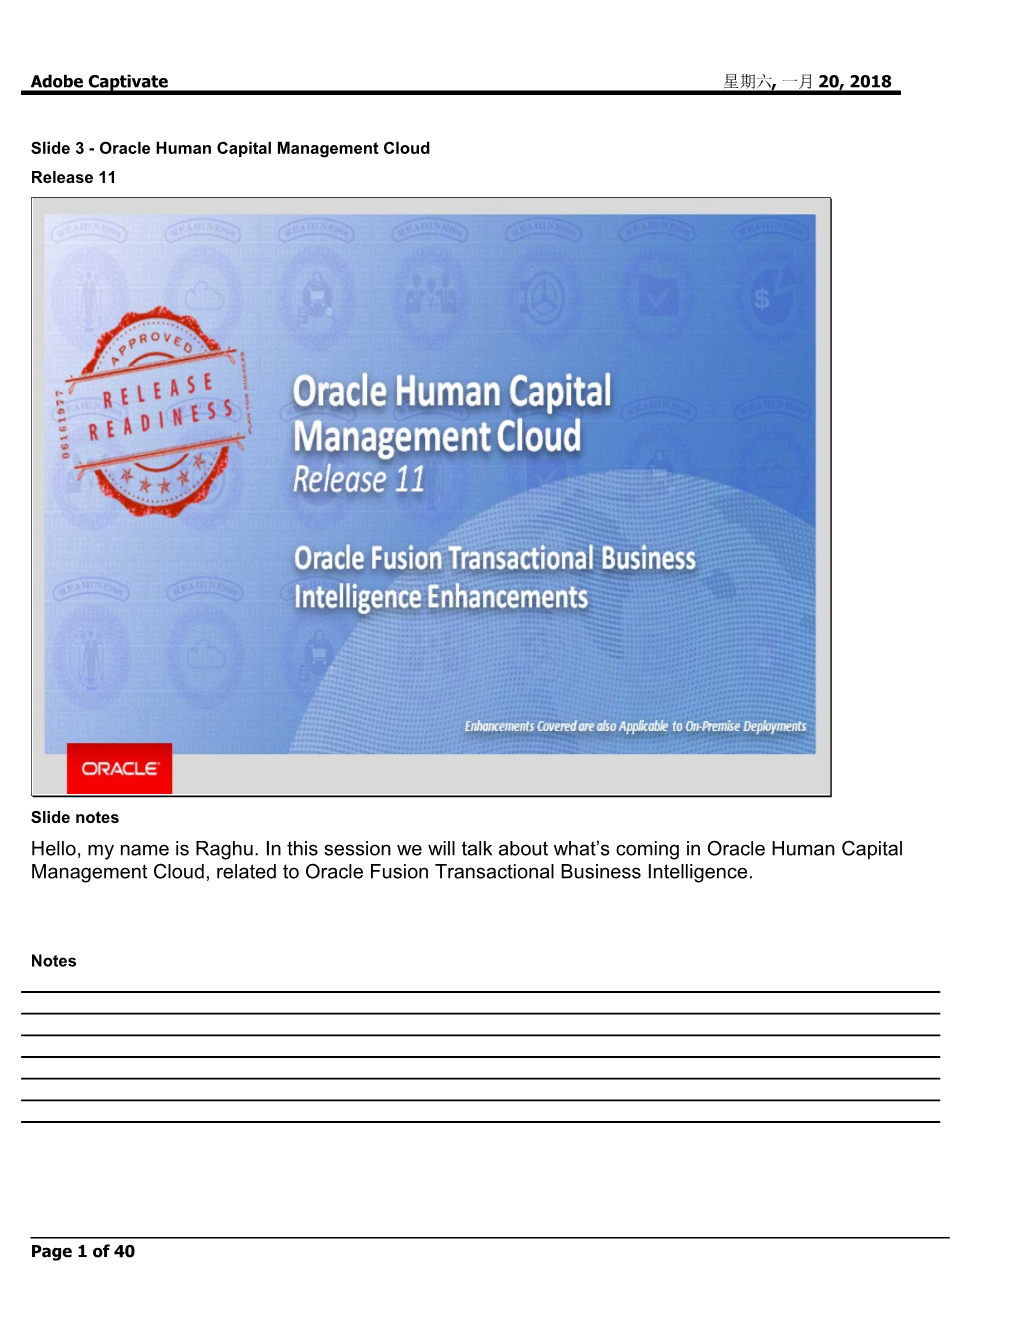 Slide 3 - Oracle Human Capital Management Cloud